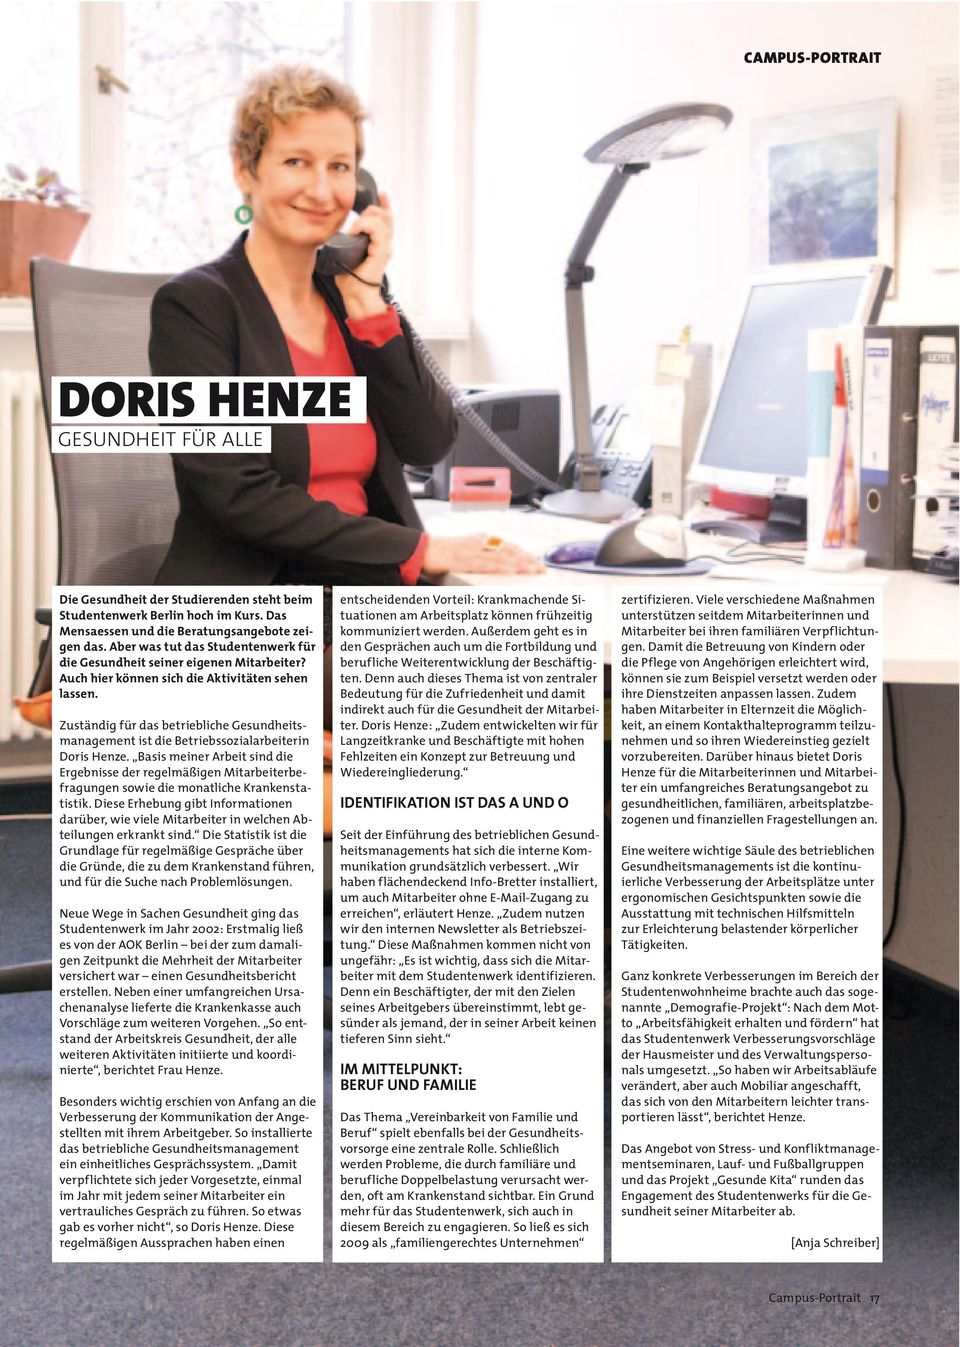 Zuständig für das betriebliche Gesundheitsmanagement ist die Betriebssozialarbeiterin Doris Henze.